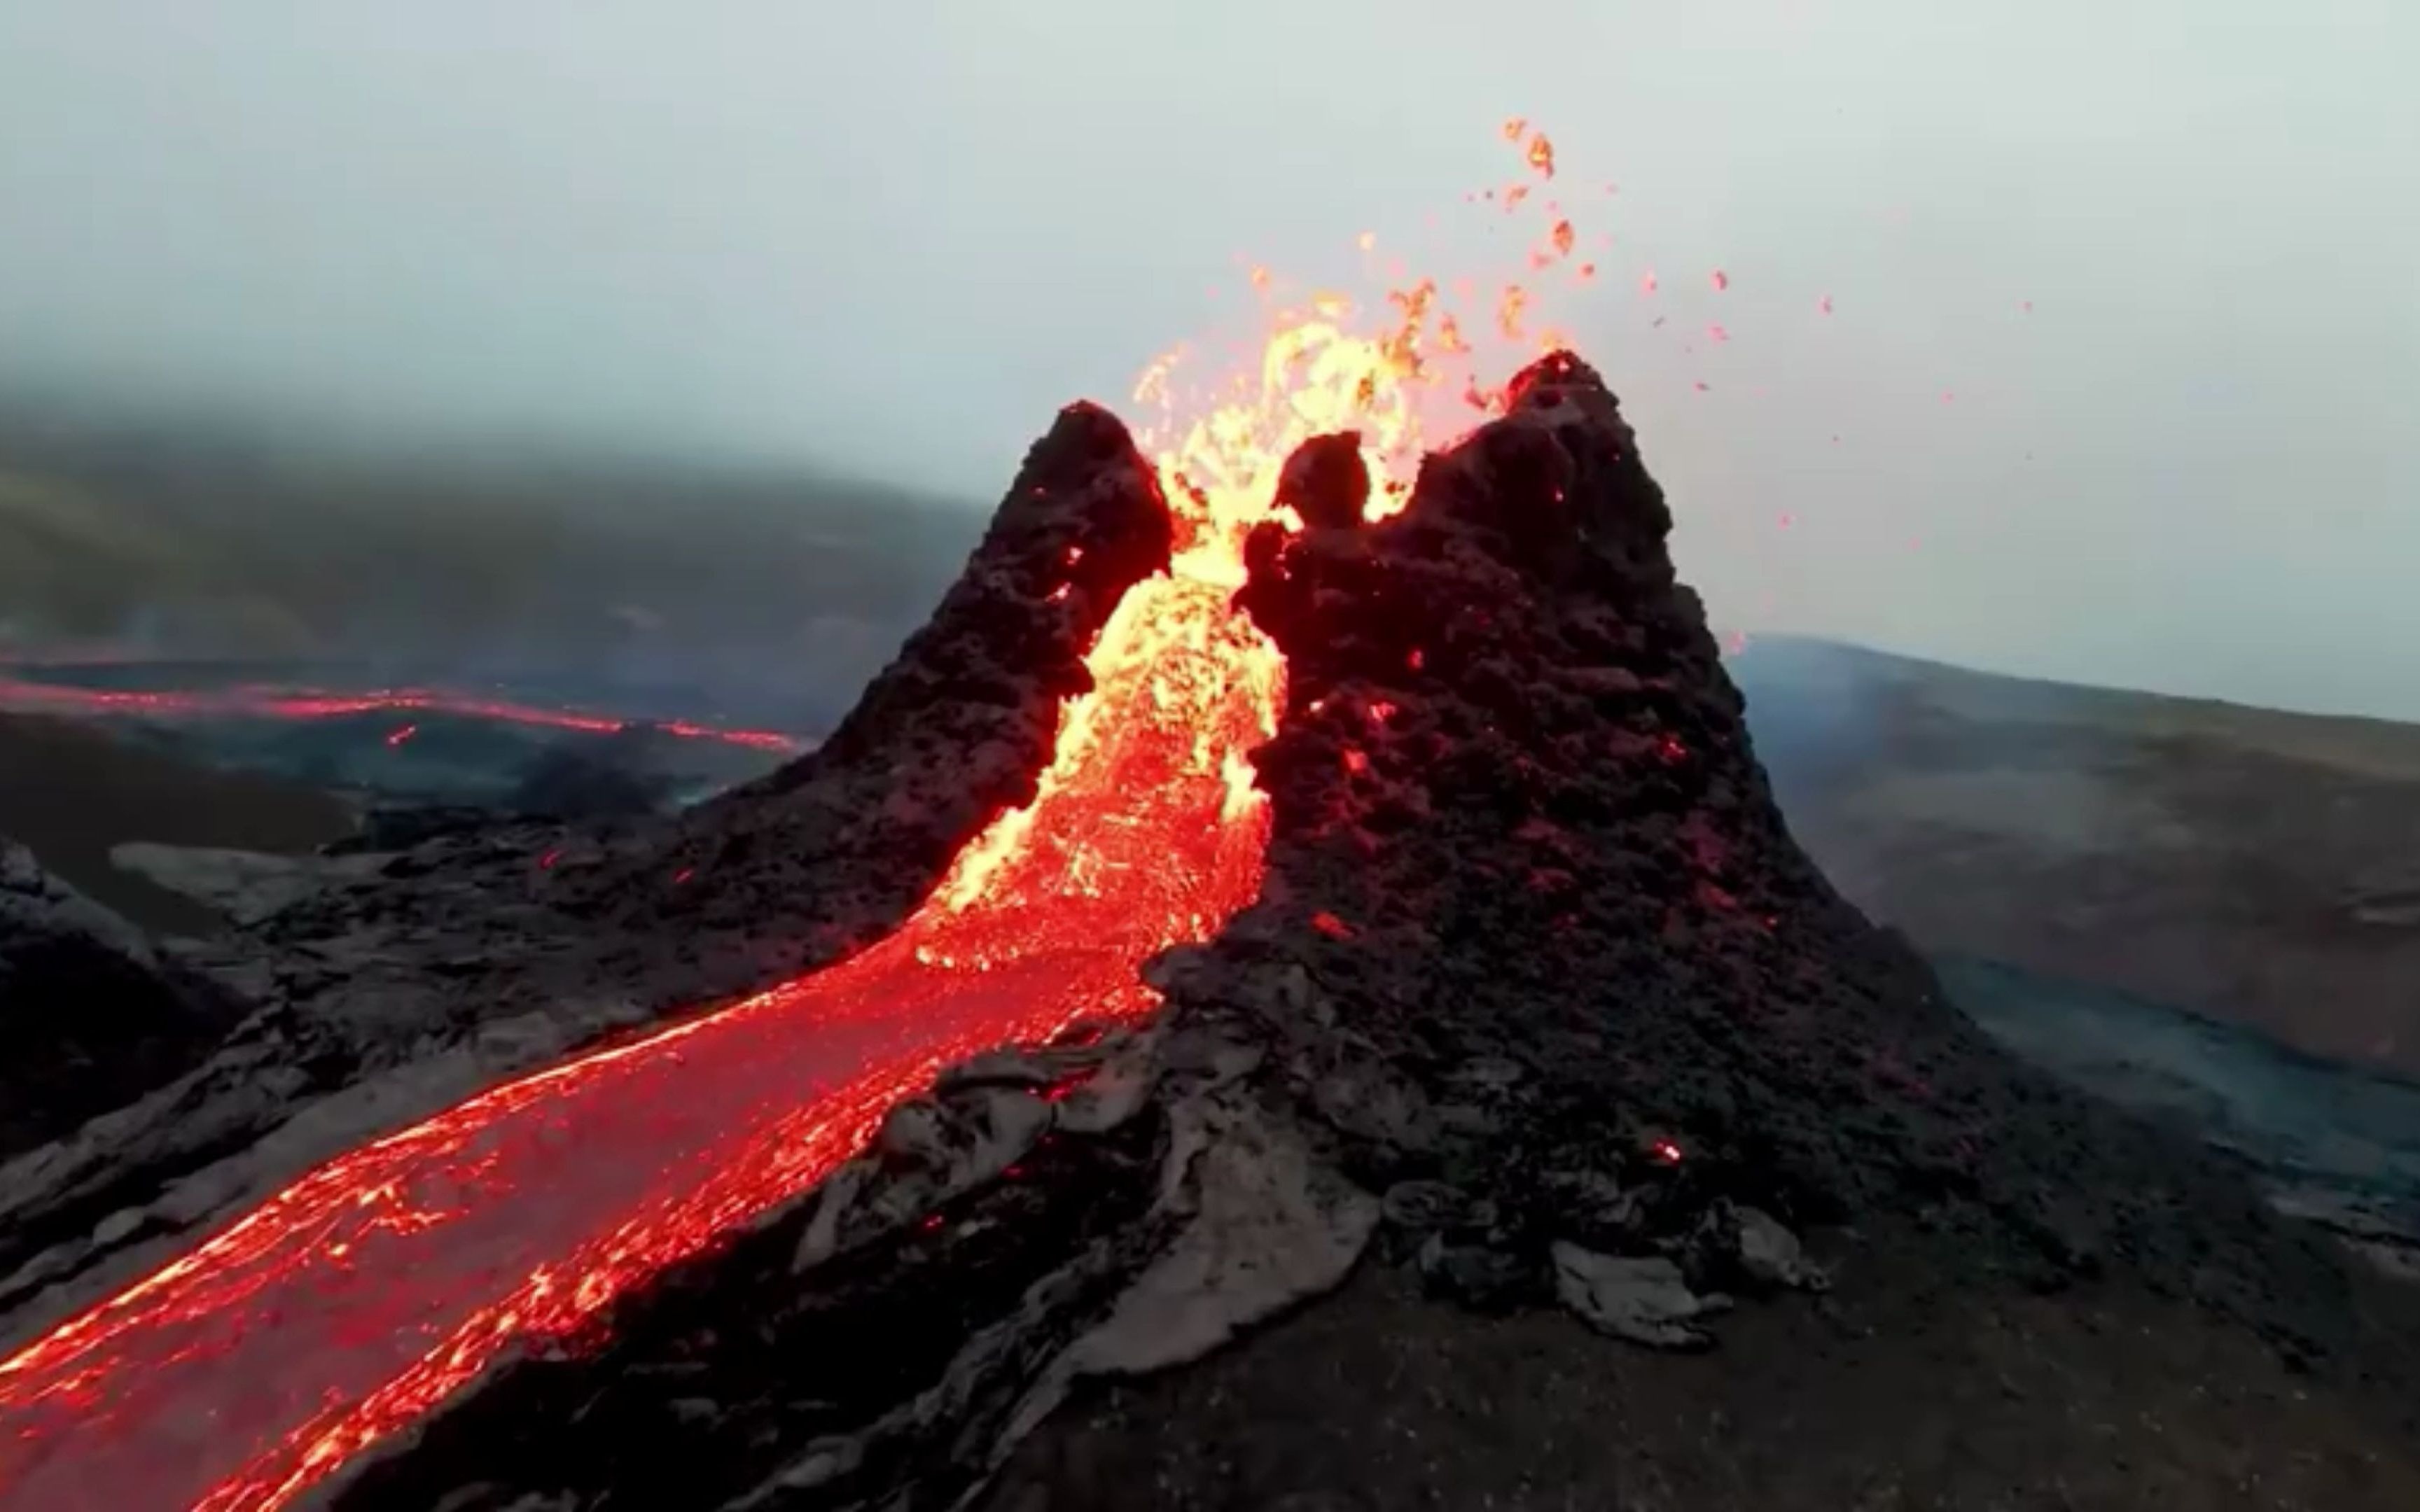 无人机拍摄的冰岛火山喷发(无声),最后还有飞跃火山口的慢镜头,太刺激